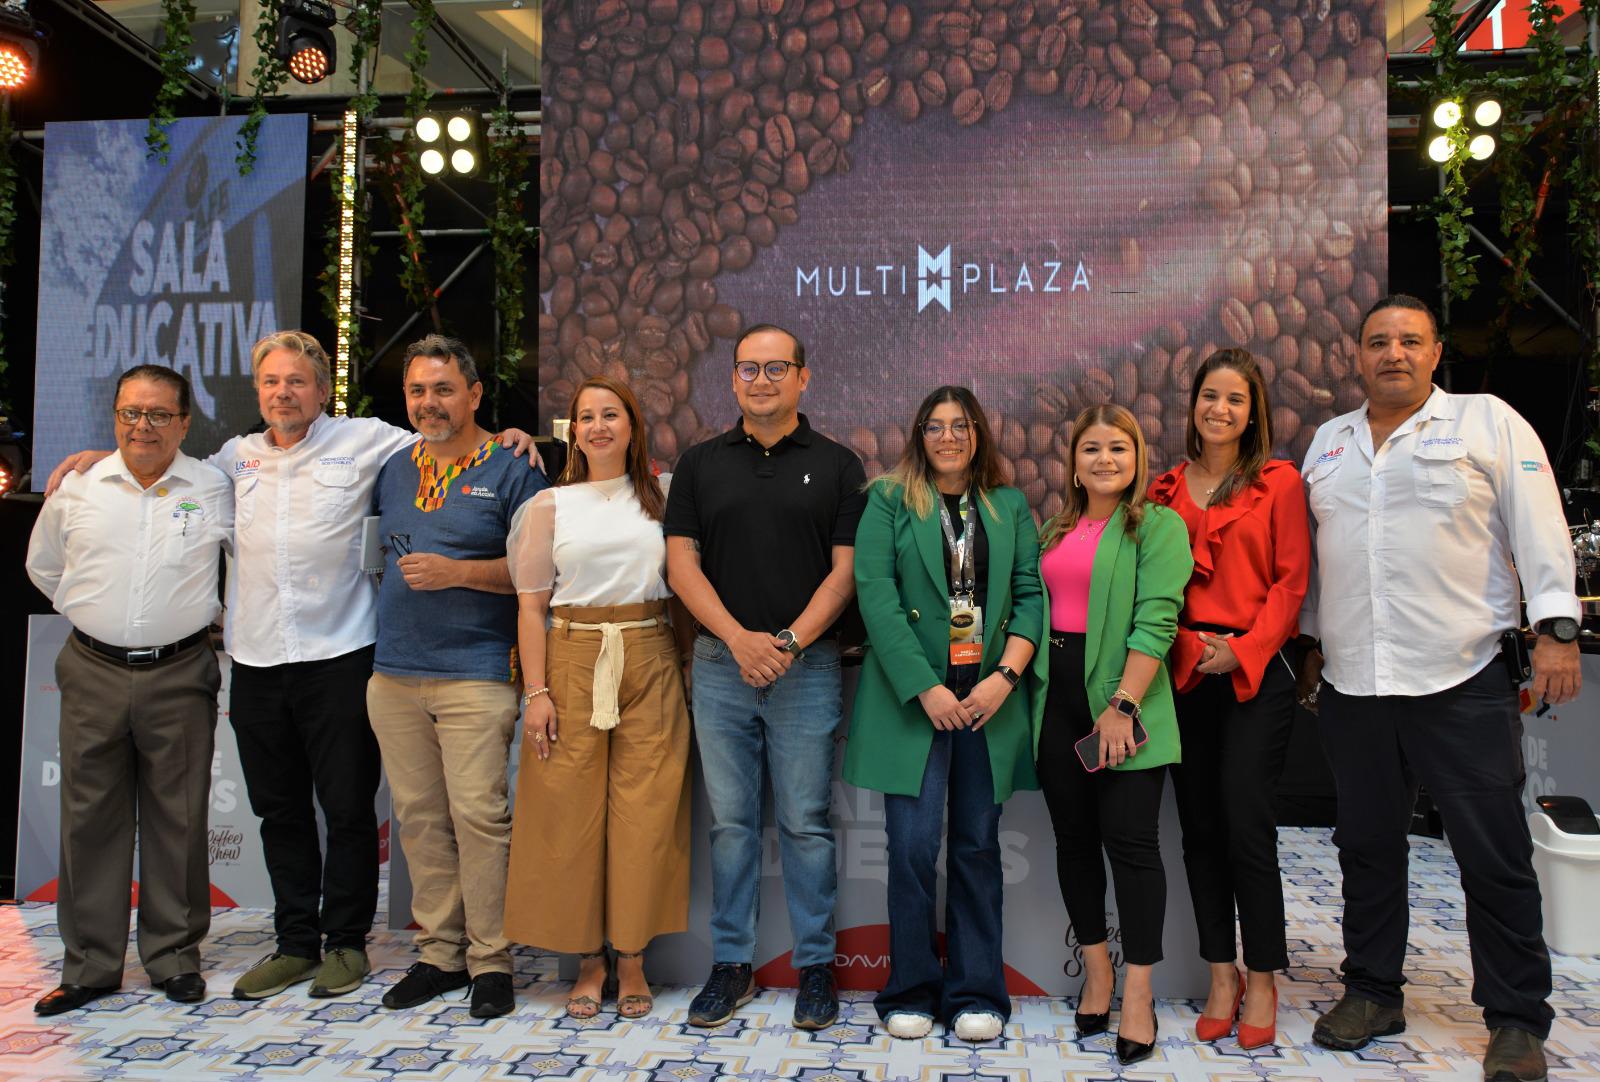 Multiplaza y Davivienda lanzan la 7ma. edición del Coffee Show Multiplaza